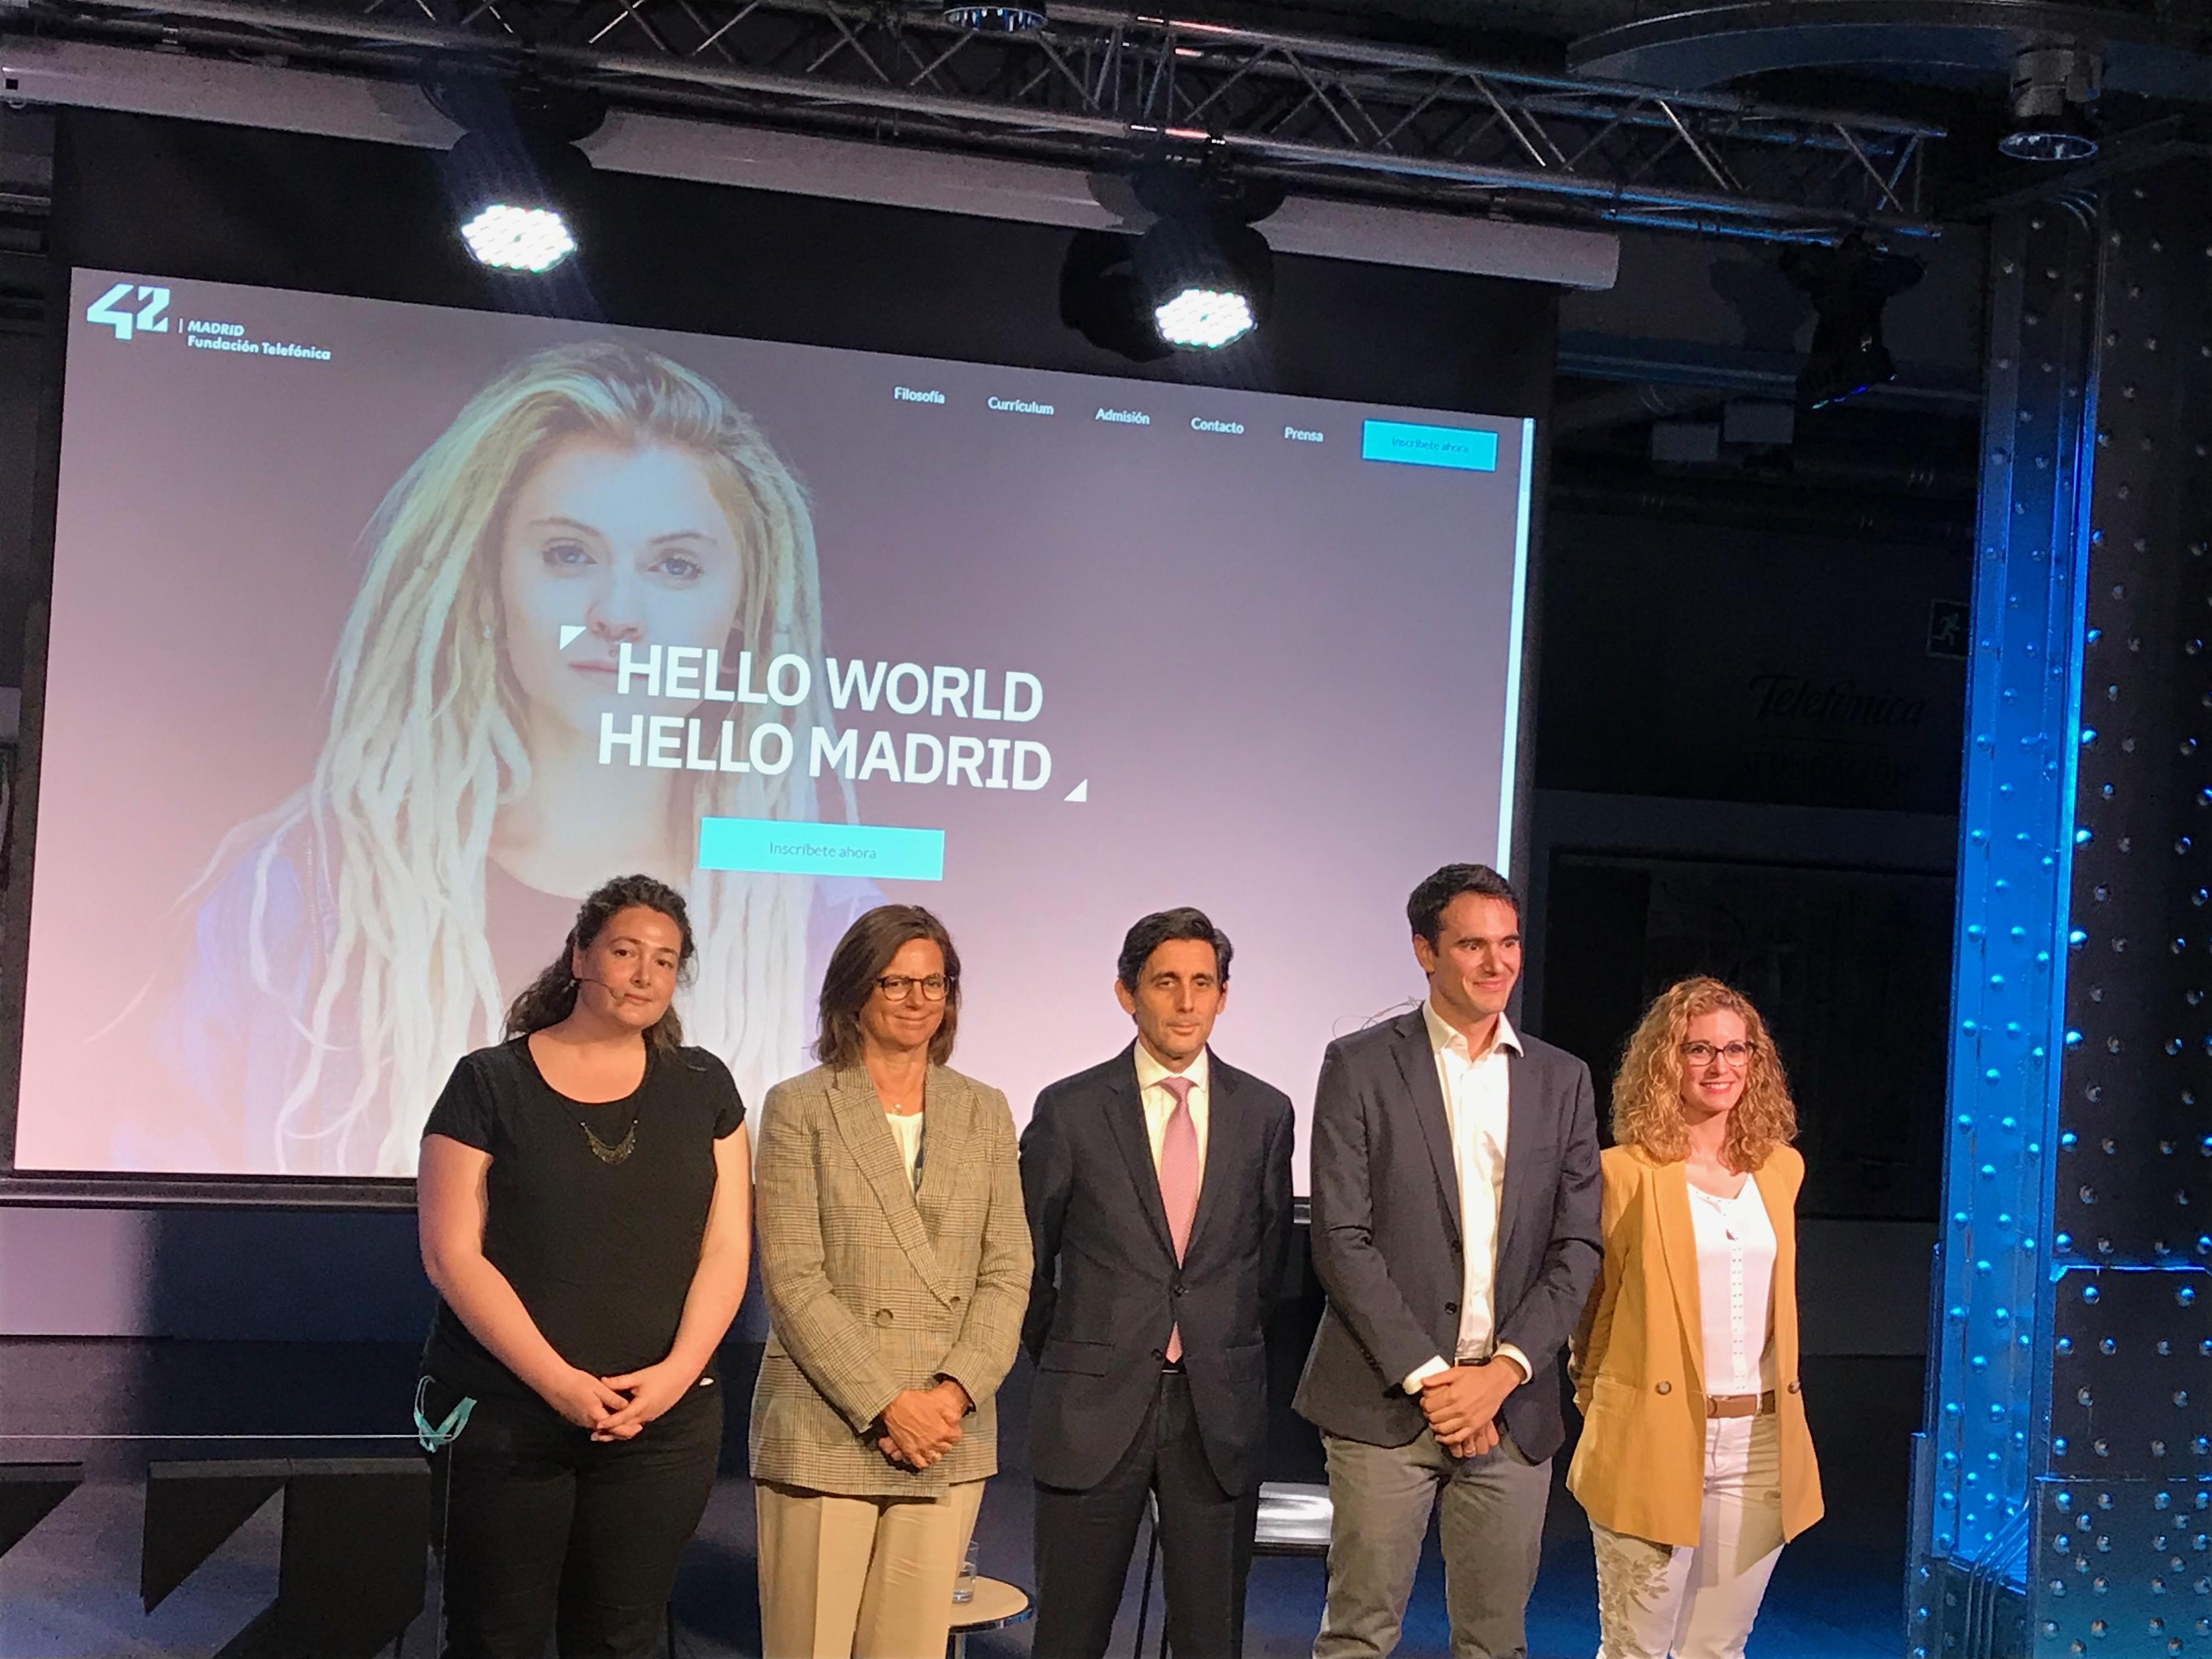 Presentación de 42 Madrid, Fundación Telefónica